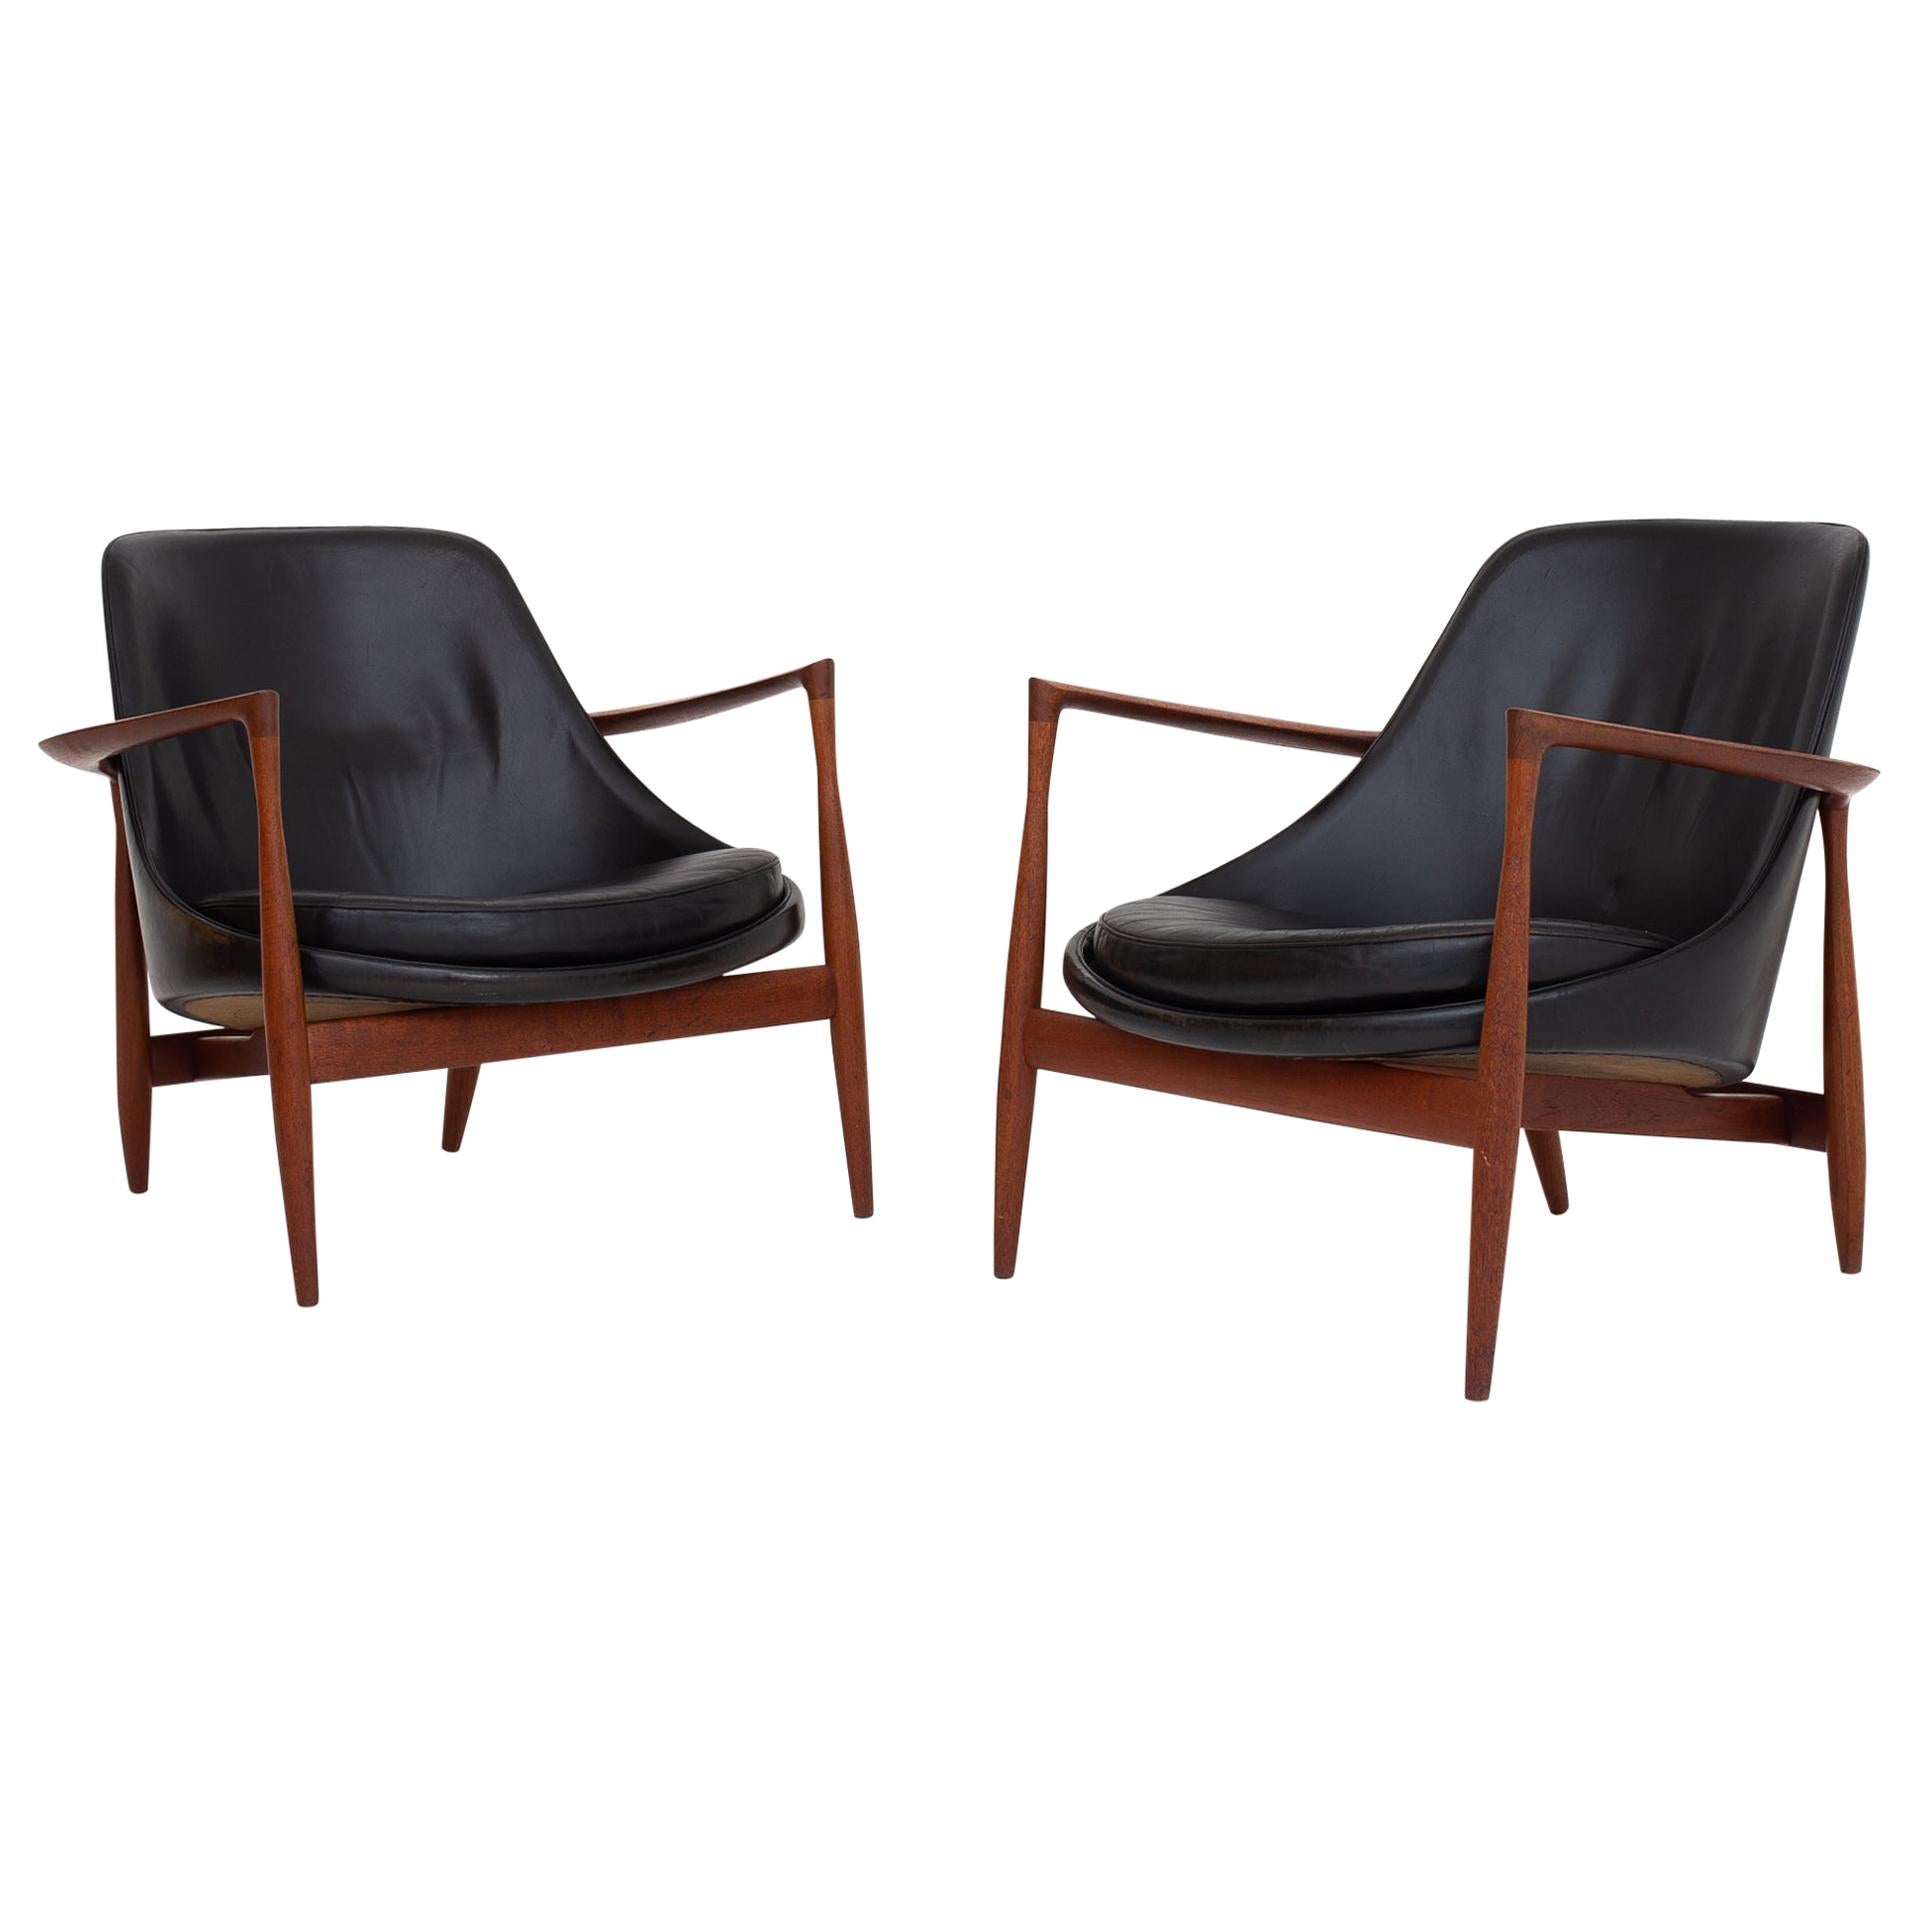 Pair of Elizabeth Chairs by Ib Kofod Larsen